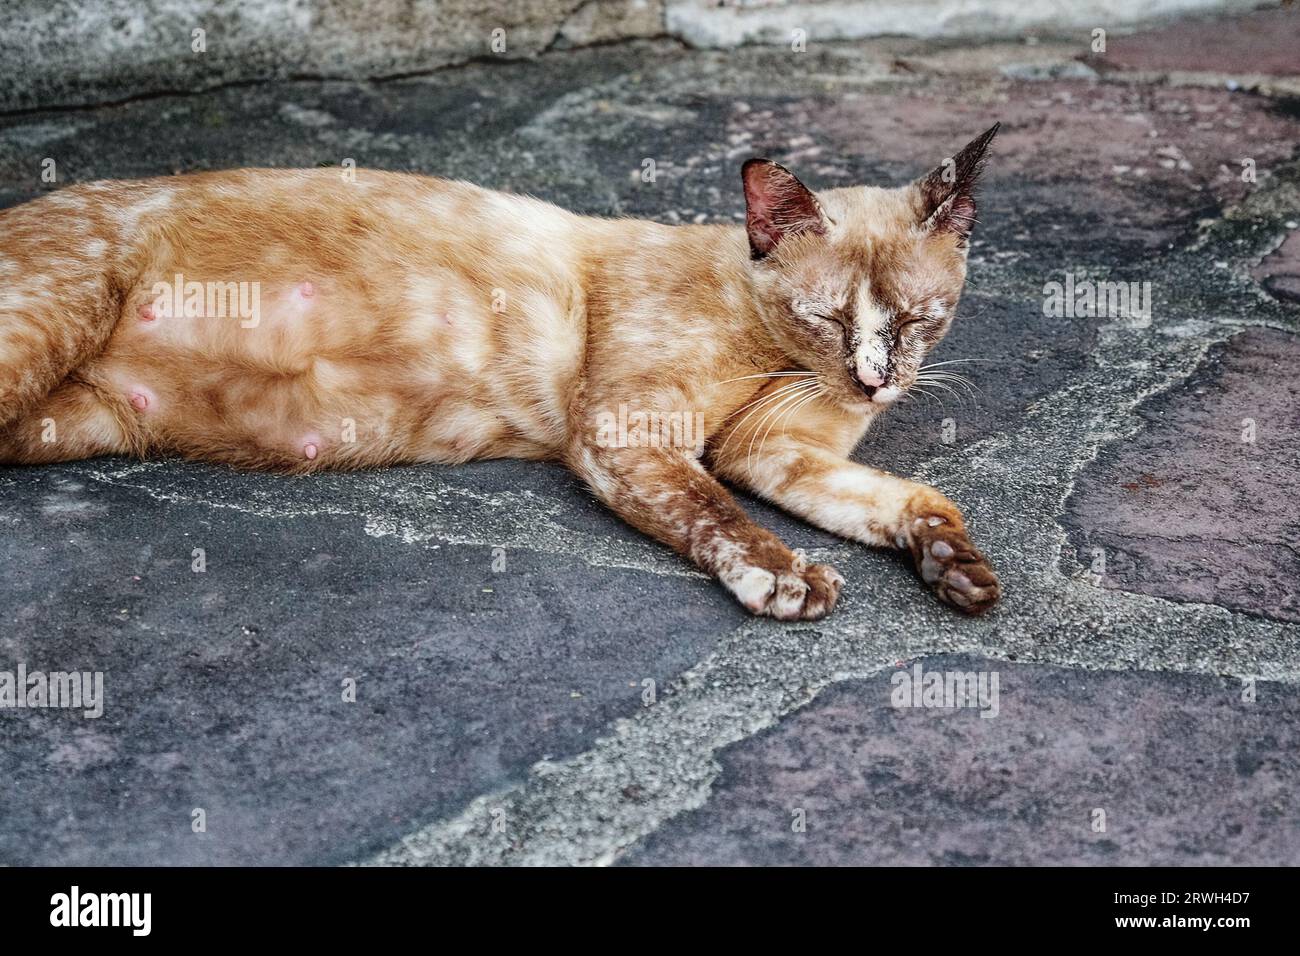 Un chat allongé sur un sol en pierre. Le chat est de couleur brune et semble dormir. Le chat est allongé sur le côté. Banque D'Images